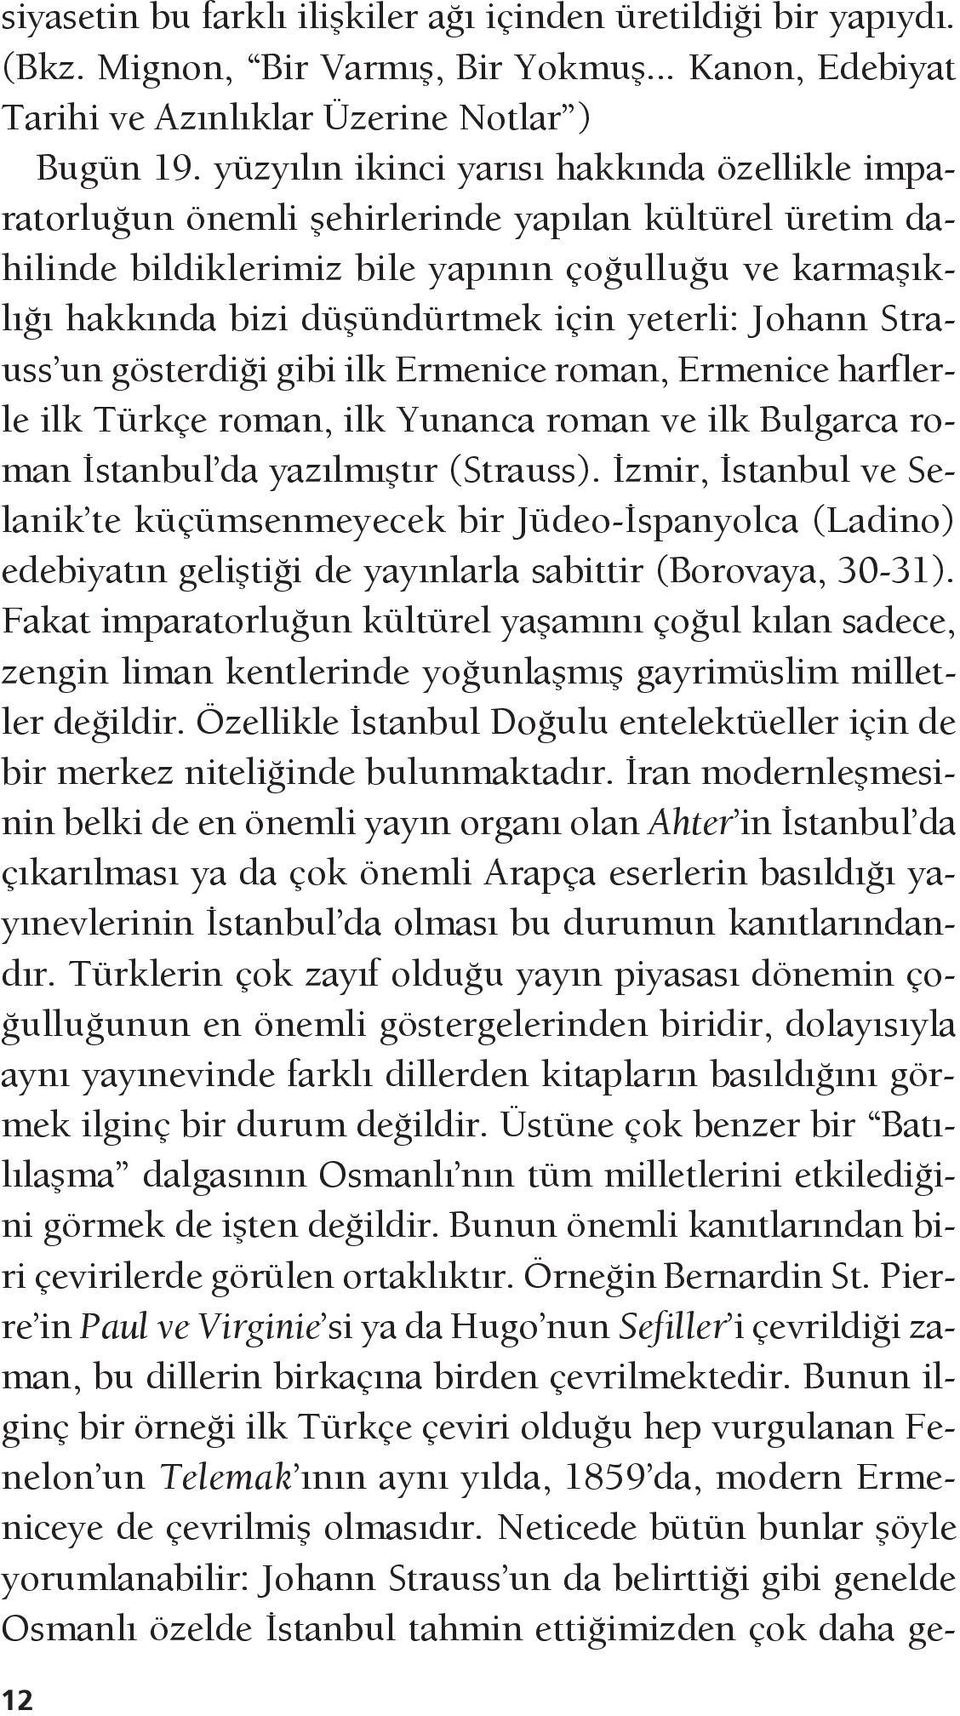 yeterli: Johann Strauss un gösterdiği gibi ilk Ermenice roman, Ermenice harflerle ilk Türkçe roman, ilk Yunanca roman ve ilk Bulgarca roman İstanbul da yazılmıştır (Strauss).